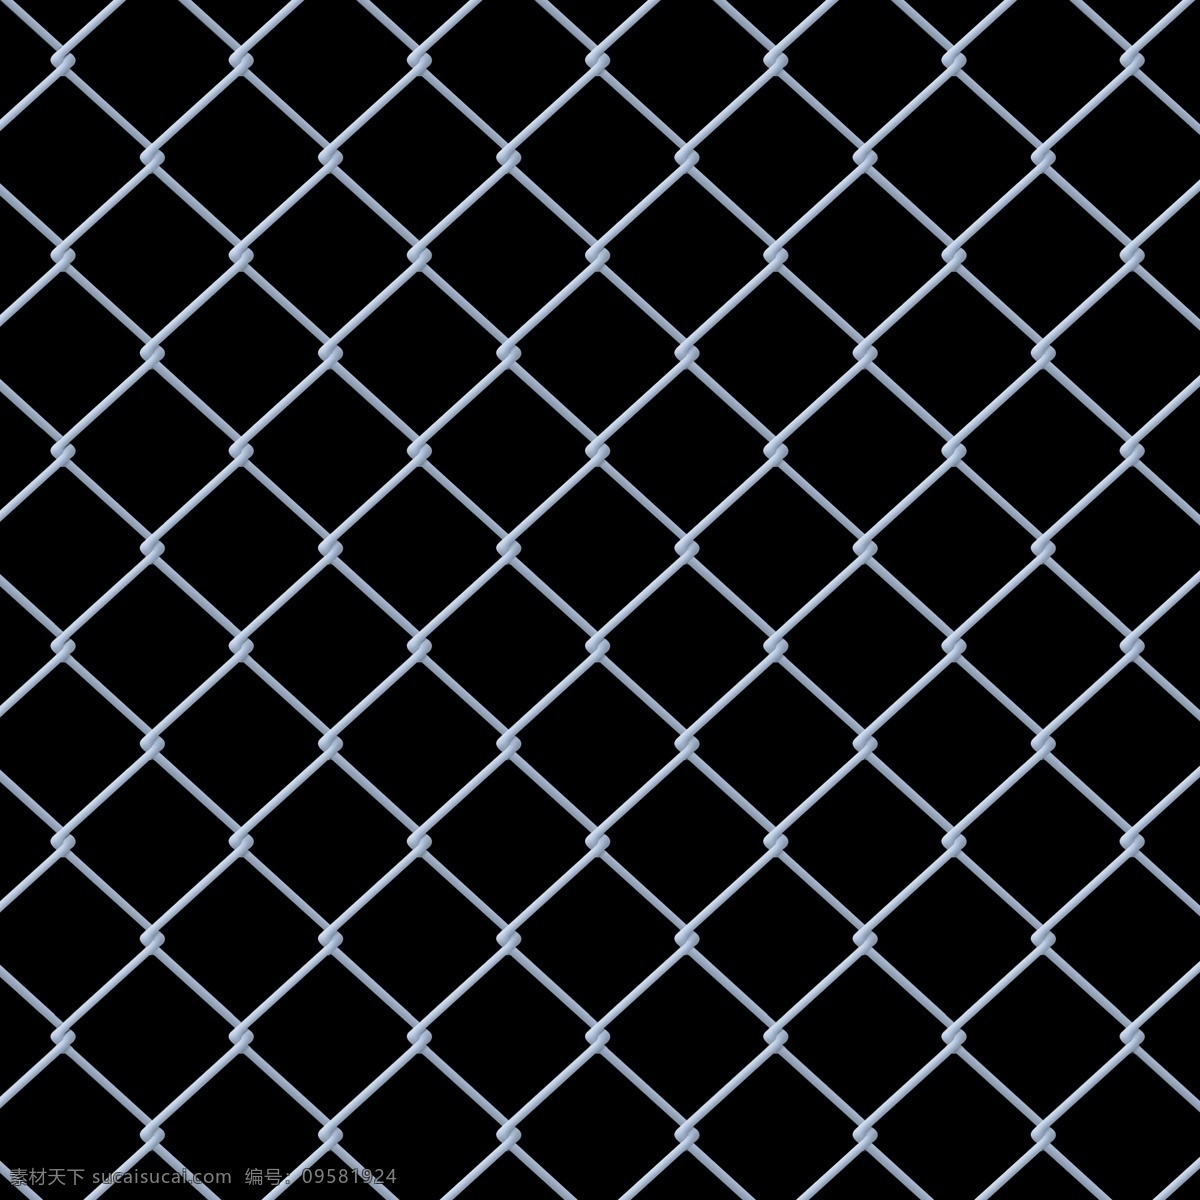 铁网图片 铁网 图案 金属材质 铁丝 铁栅栏 网格 足球场 防护网 工业 生锈 纹理 分层